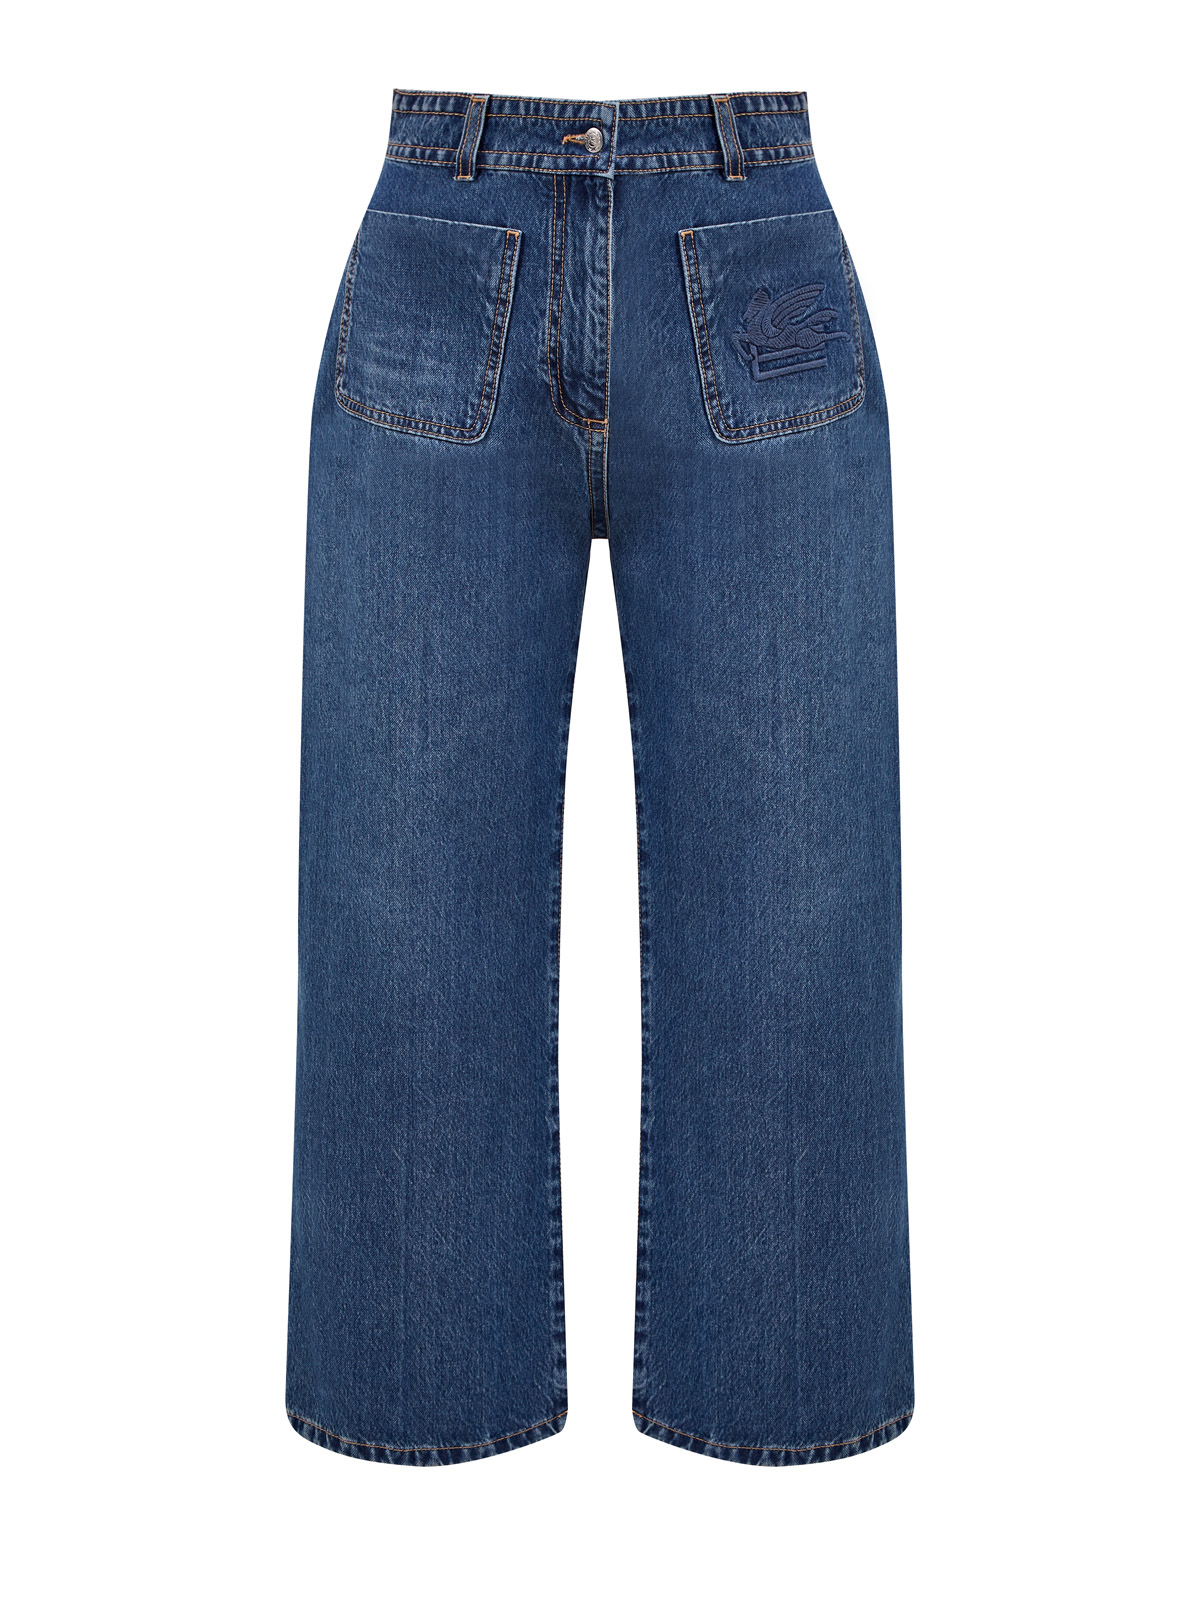 Укороченные джинсы с накладными карманами и вышитым логотипом ETRO синего цвета